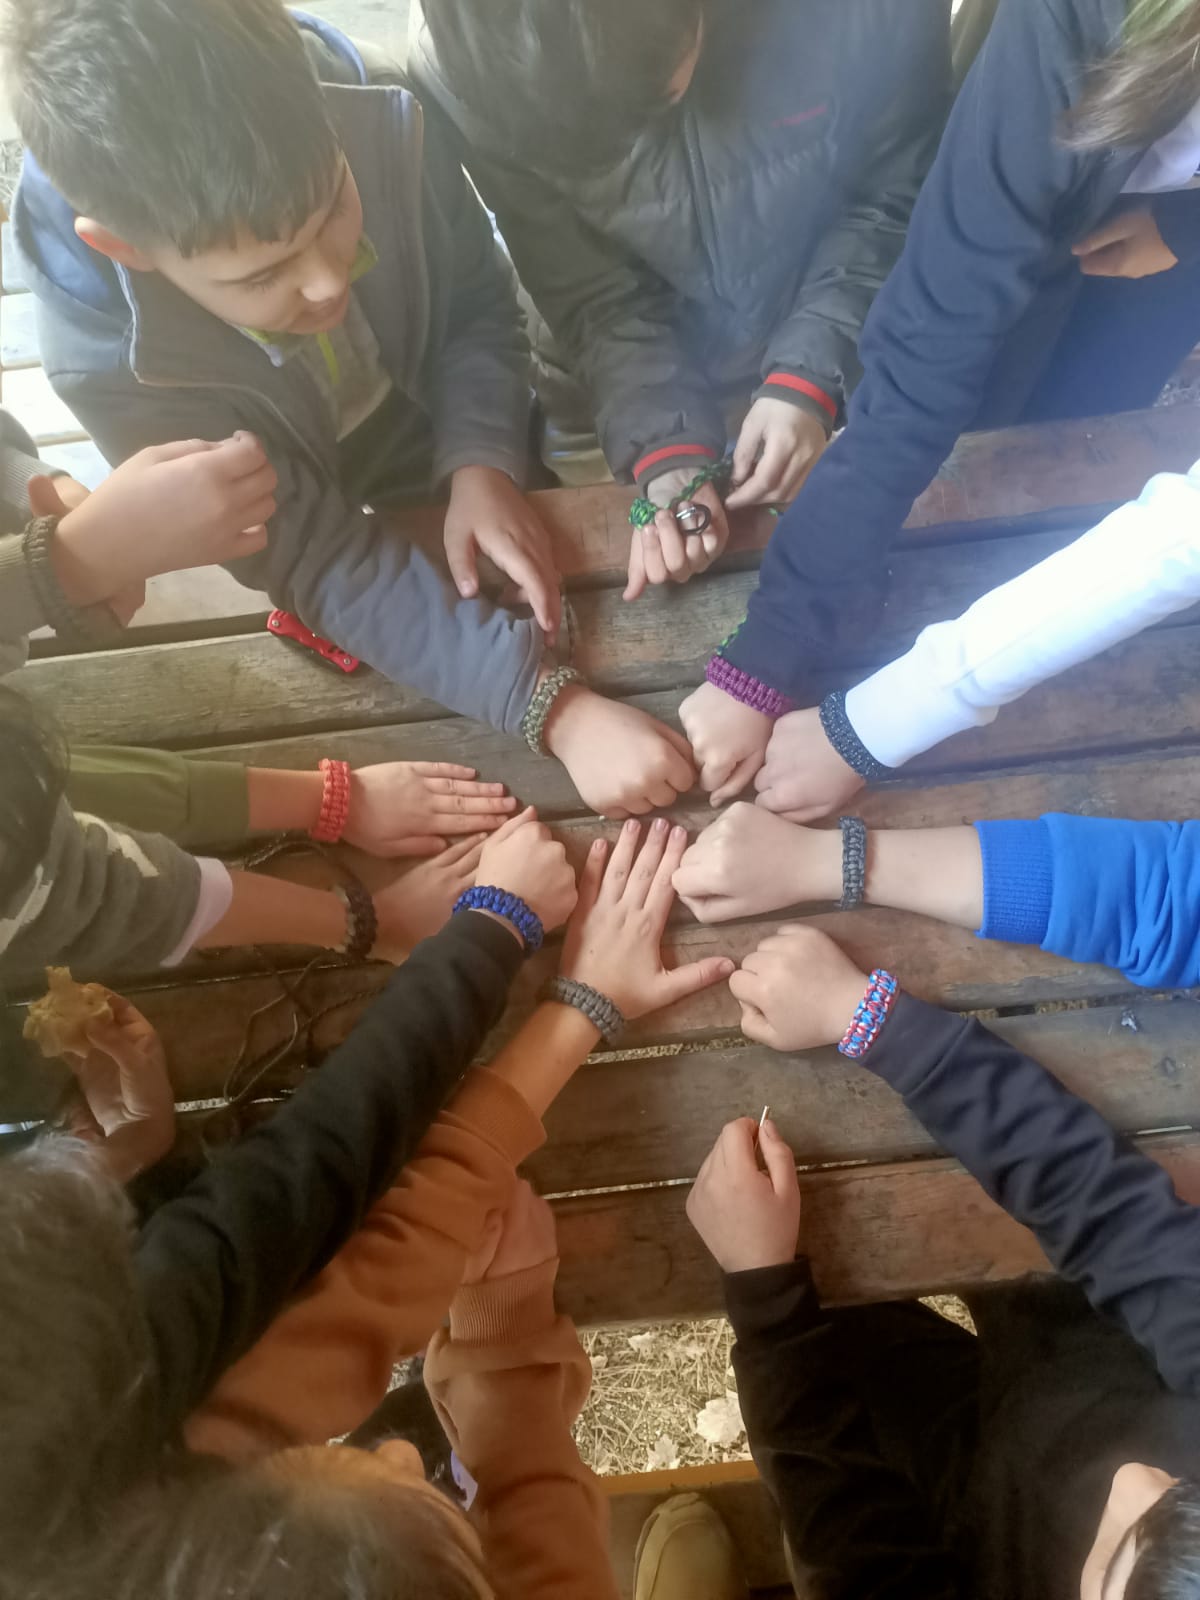 Sakarya Ormanları, Ahmet Akkoç Ortaokulu'nun Öğrencileri ve Öğretmenleri İçin Doğa Sınıfına Dönüştü